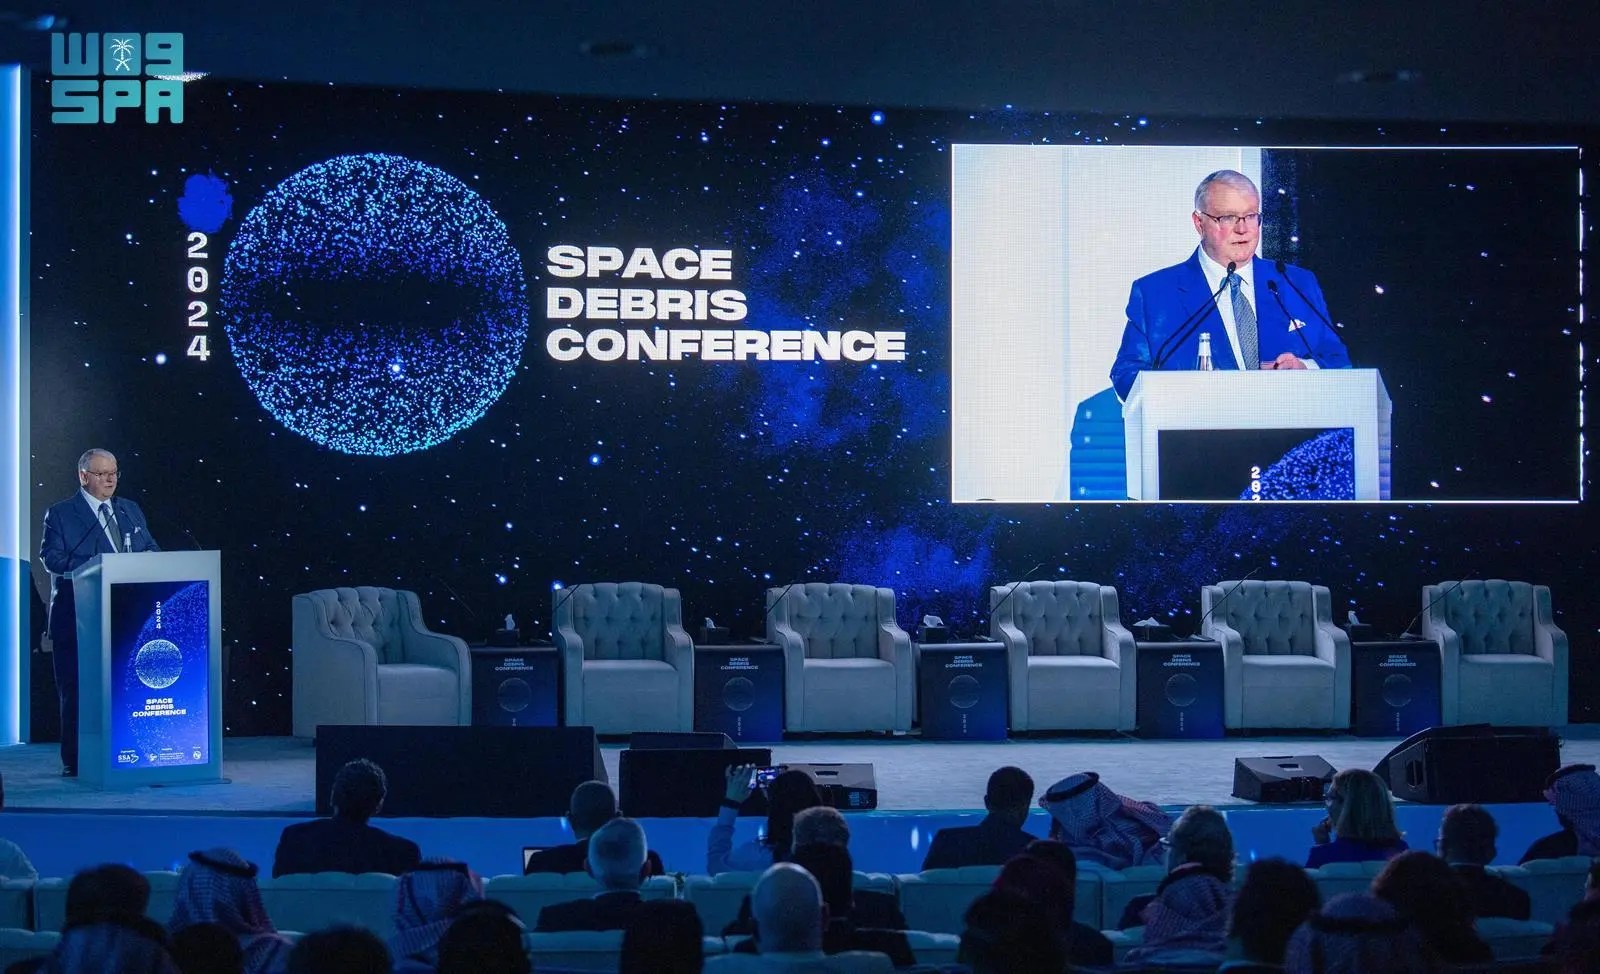 “مؤتمر الحطام الفضائي” يواصل جلساته لمناقشة استدامة قطاع الفضاء ومستقبل اقتصاده